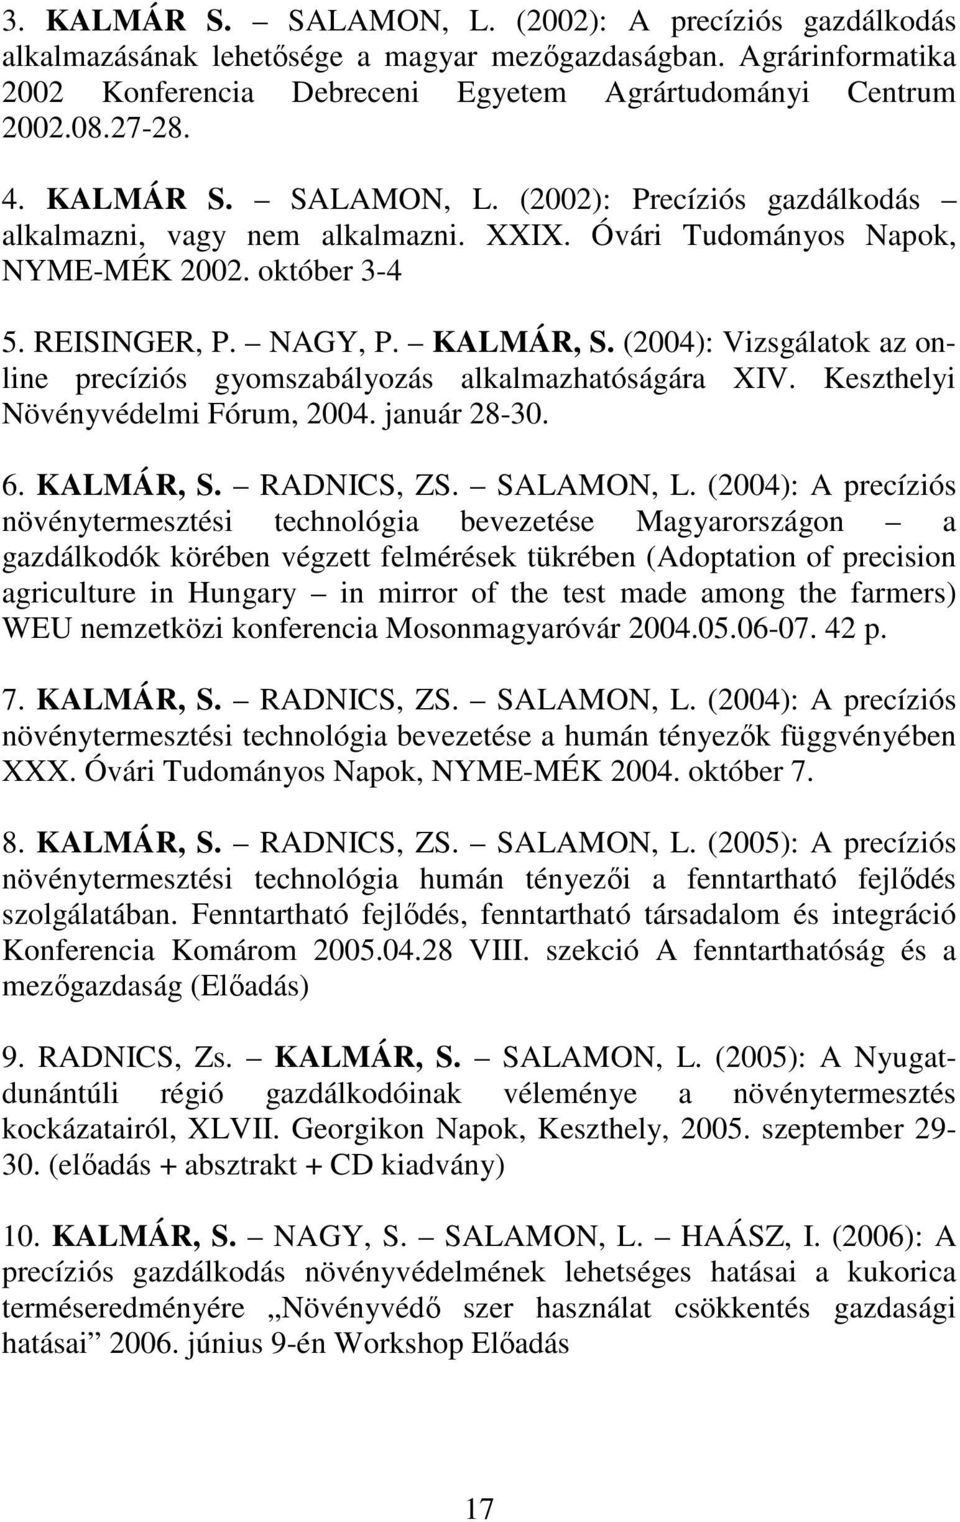 (2004): Vizsgálatok az online precíziós gyomszabályozás alkalmazhatóságára XIV. Keszthelyi Növényvédelmi Fórum, 2004. január 28-30. 6. KALMÁR, S. RADNICS, ZS. SALAMON, L.